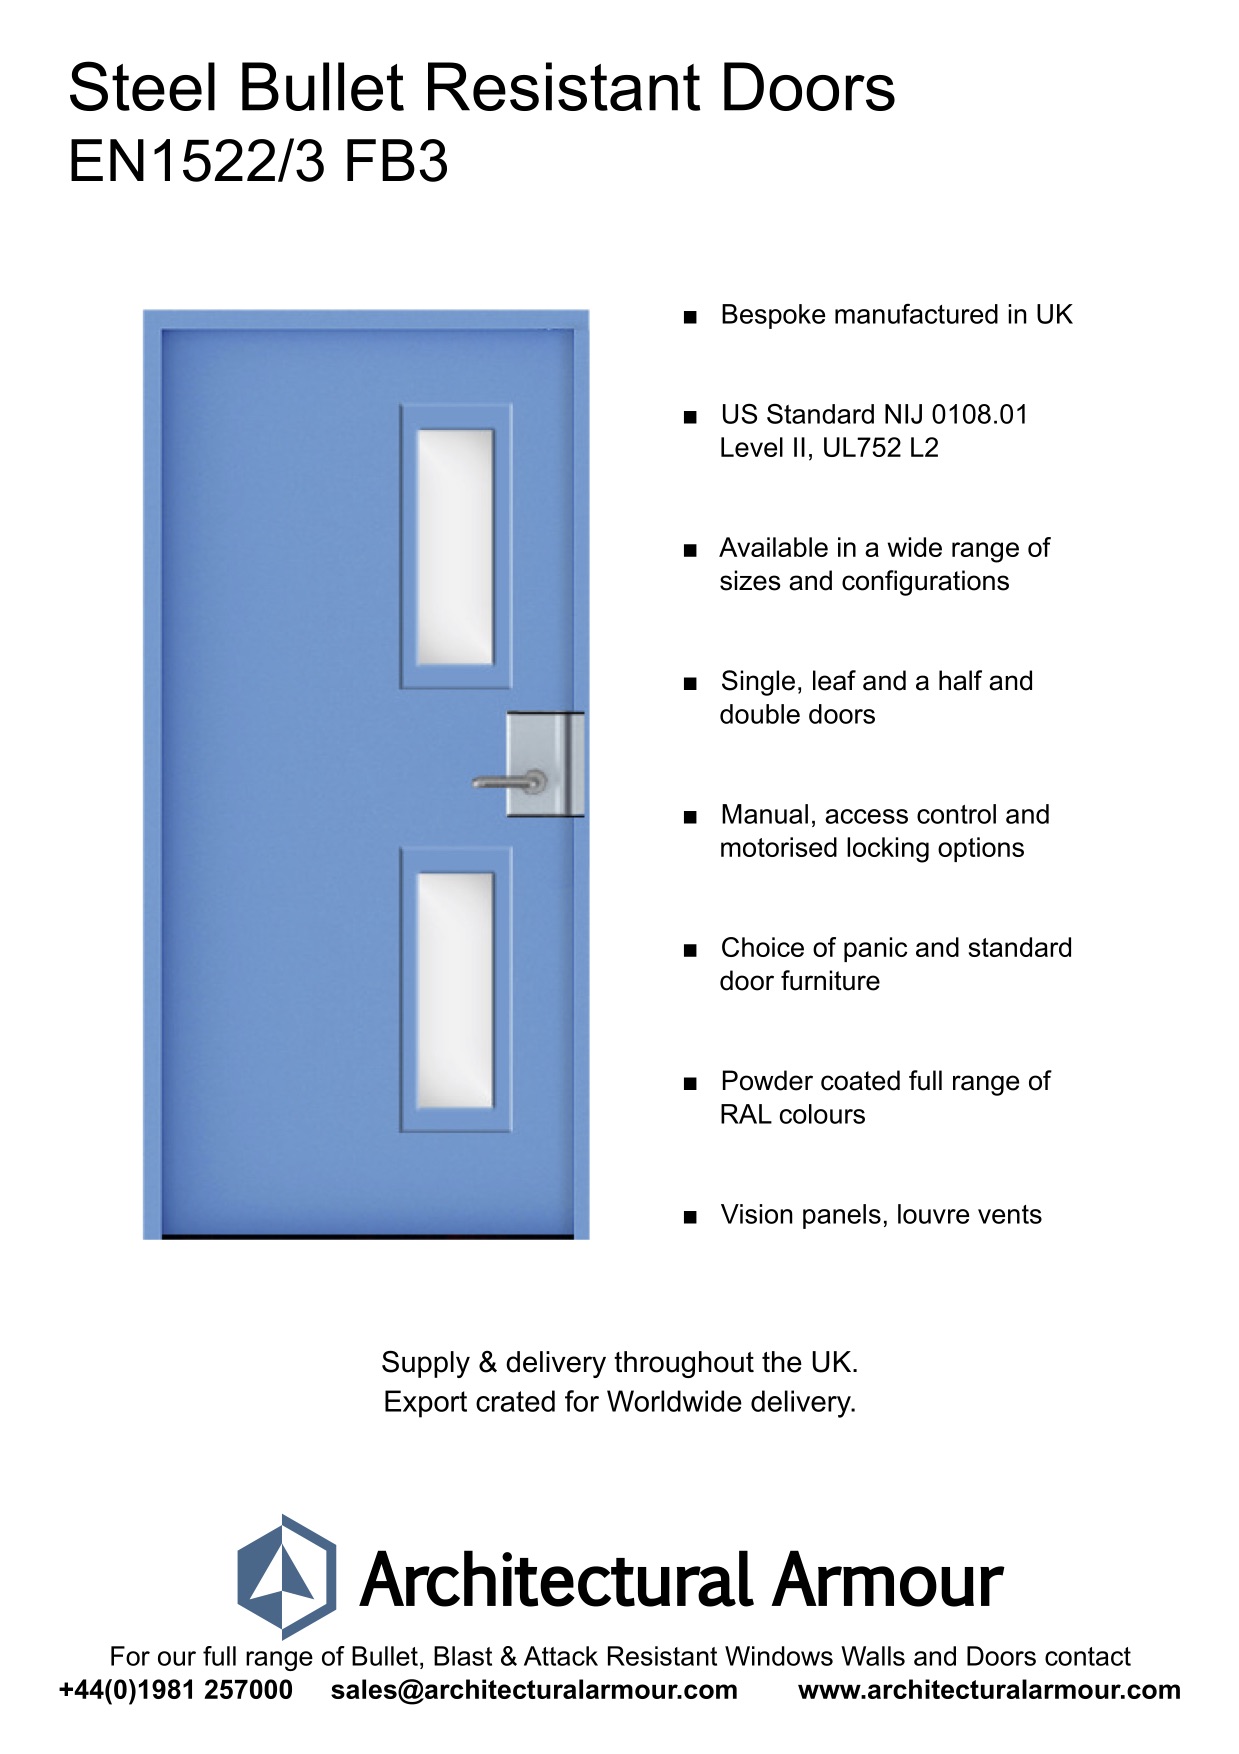  EN1522-3-FB3-Bullet-Resistant-Metal-Security-Door-UK